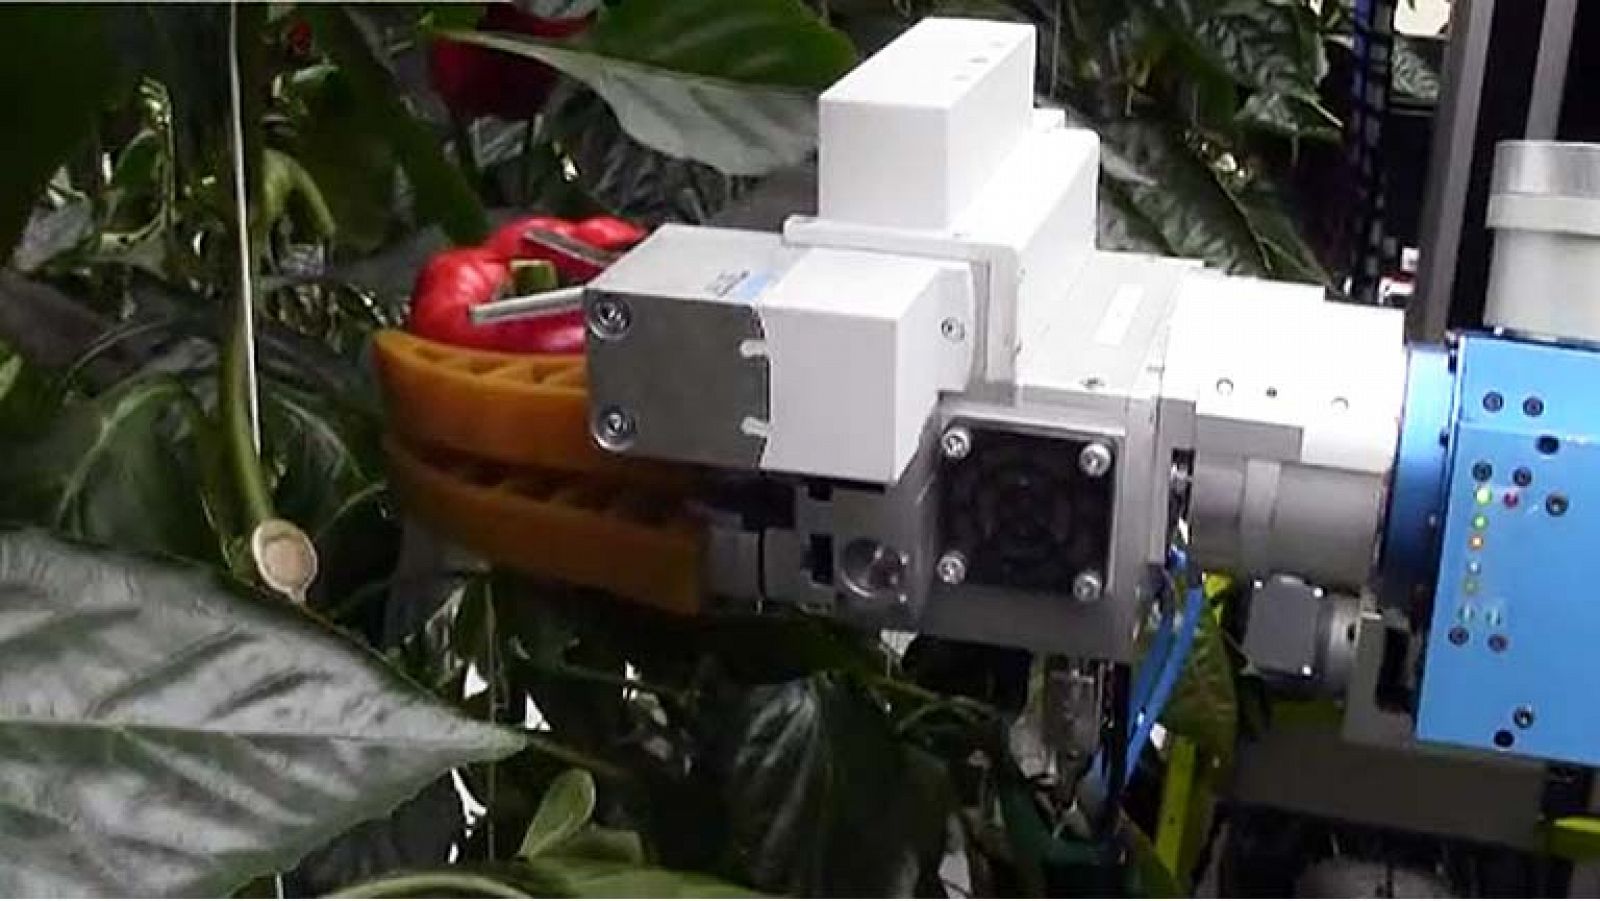  El robot del proyecto Crops recolectando hortalizas en un invernadero